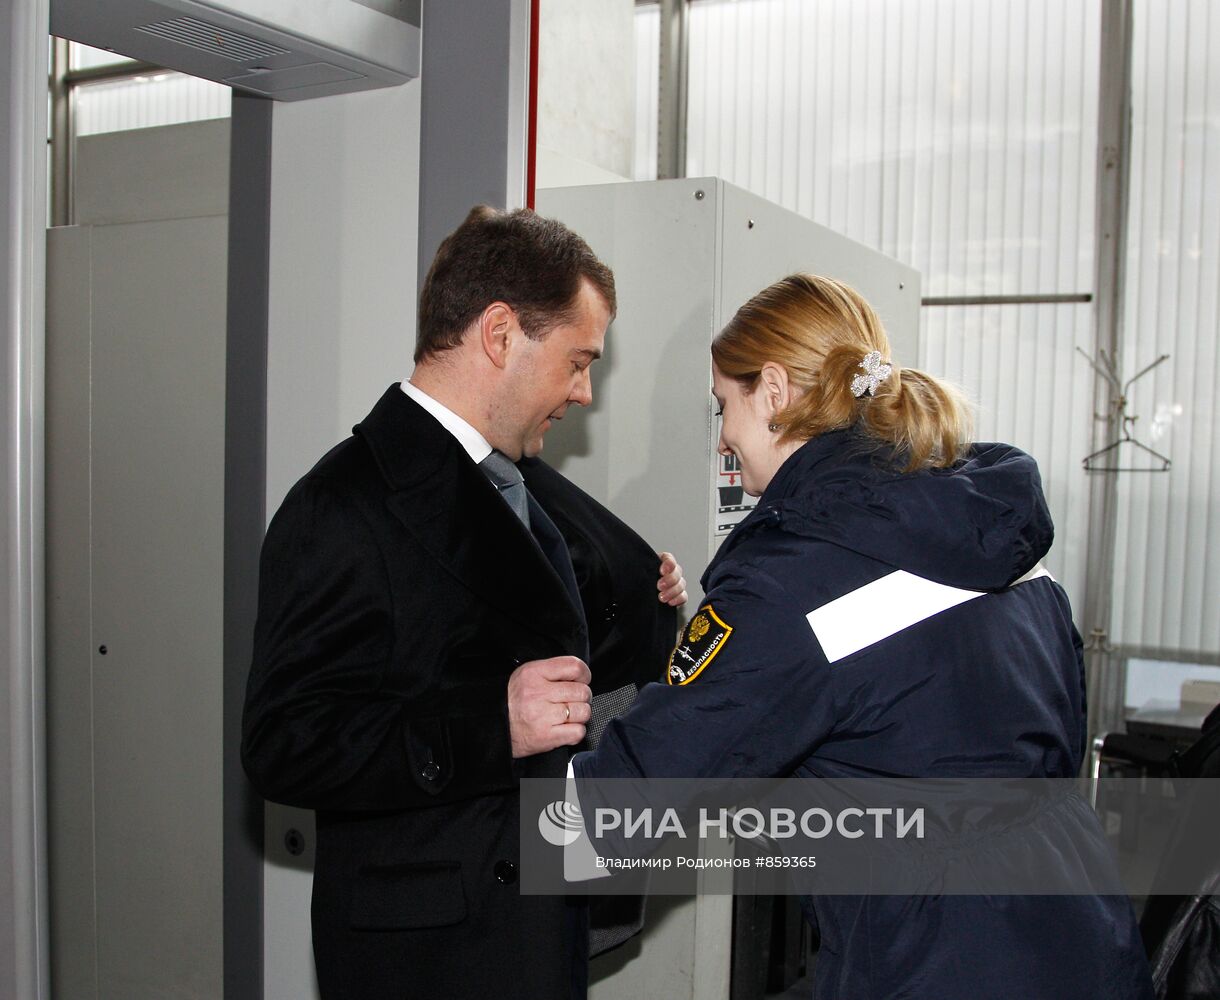 Проверка Д.Медведевым системы безопасности аэропорта "Внуково"